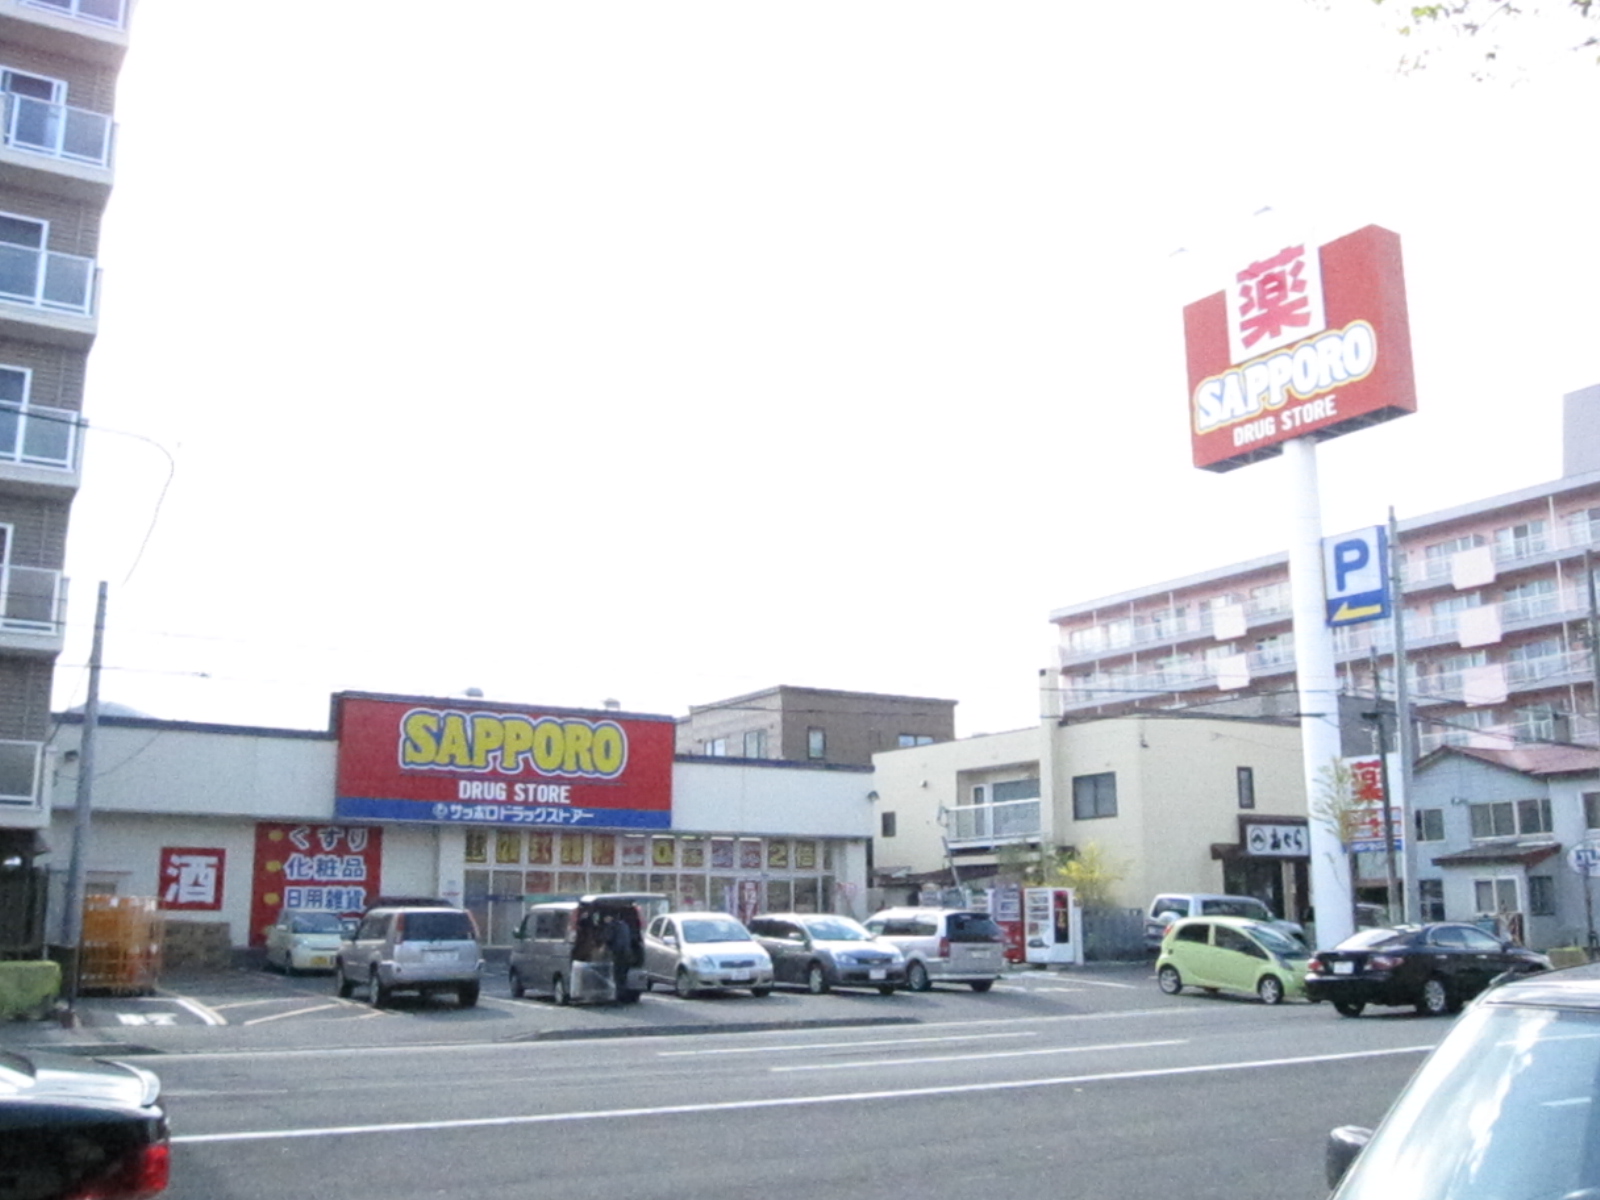 Dorakkusutoa. Sapporo drugstores Kitaen Yamaten 706m to (drugstore)